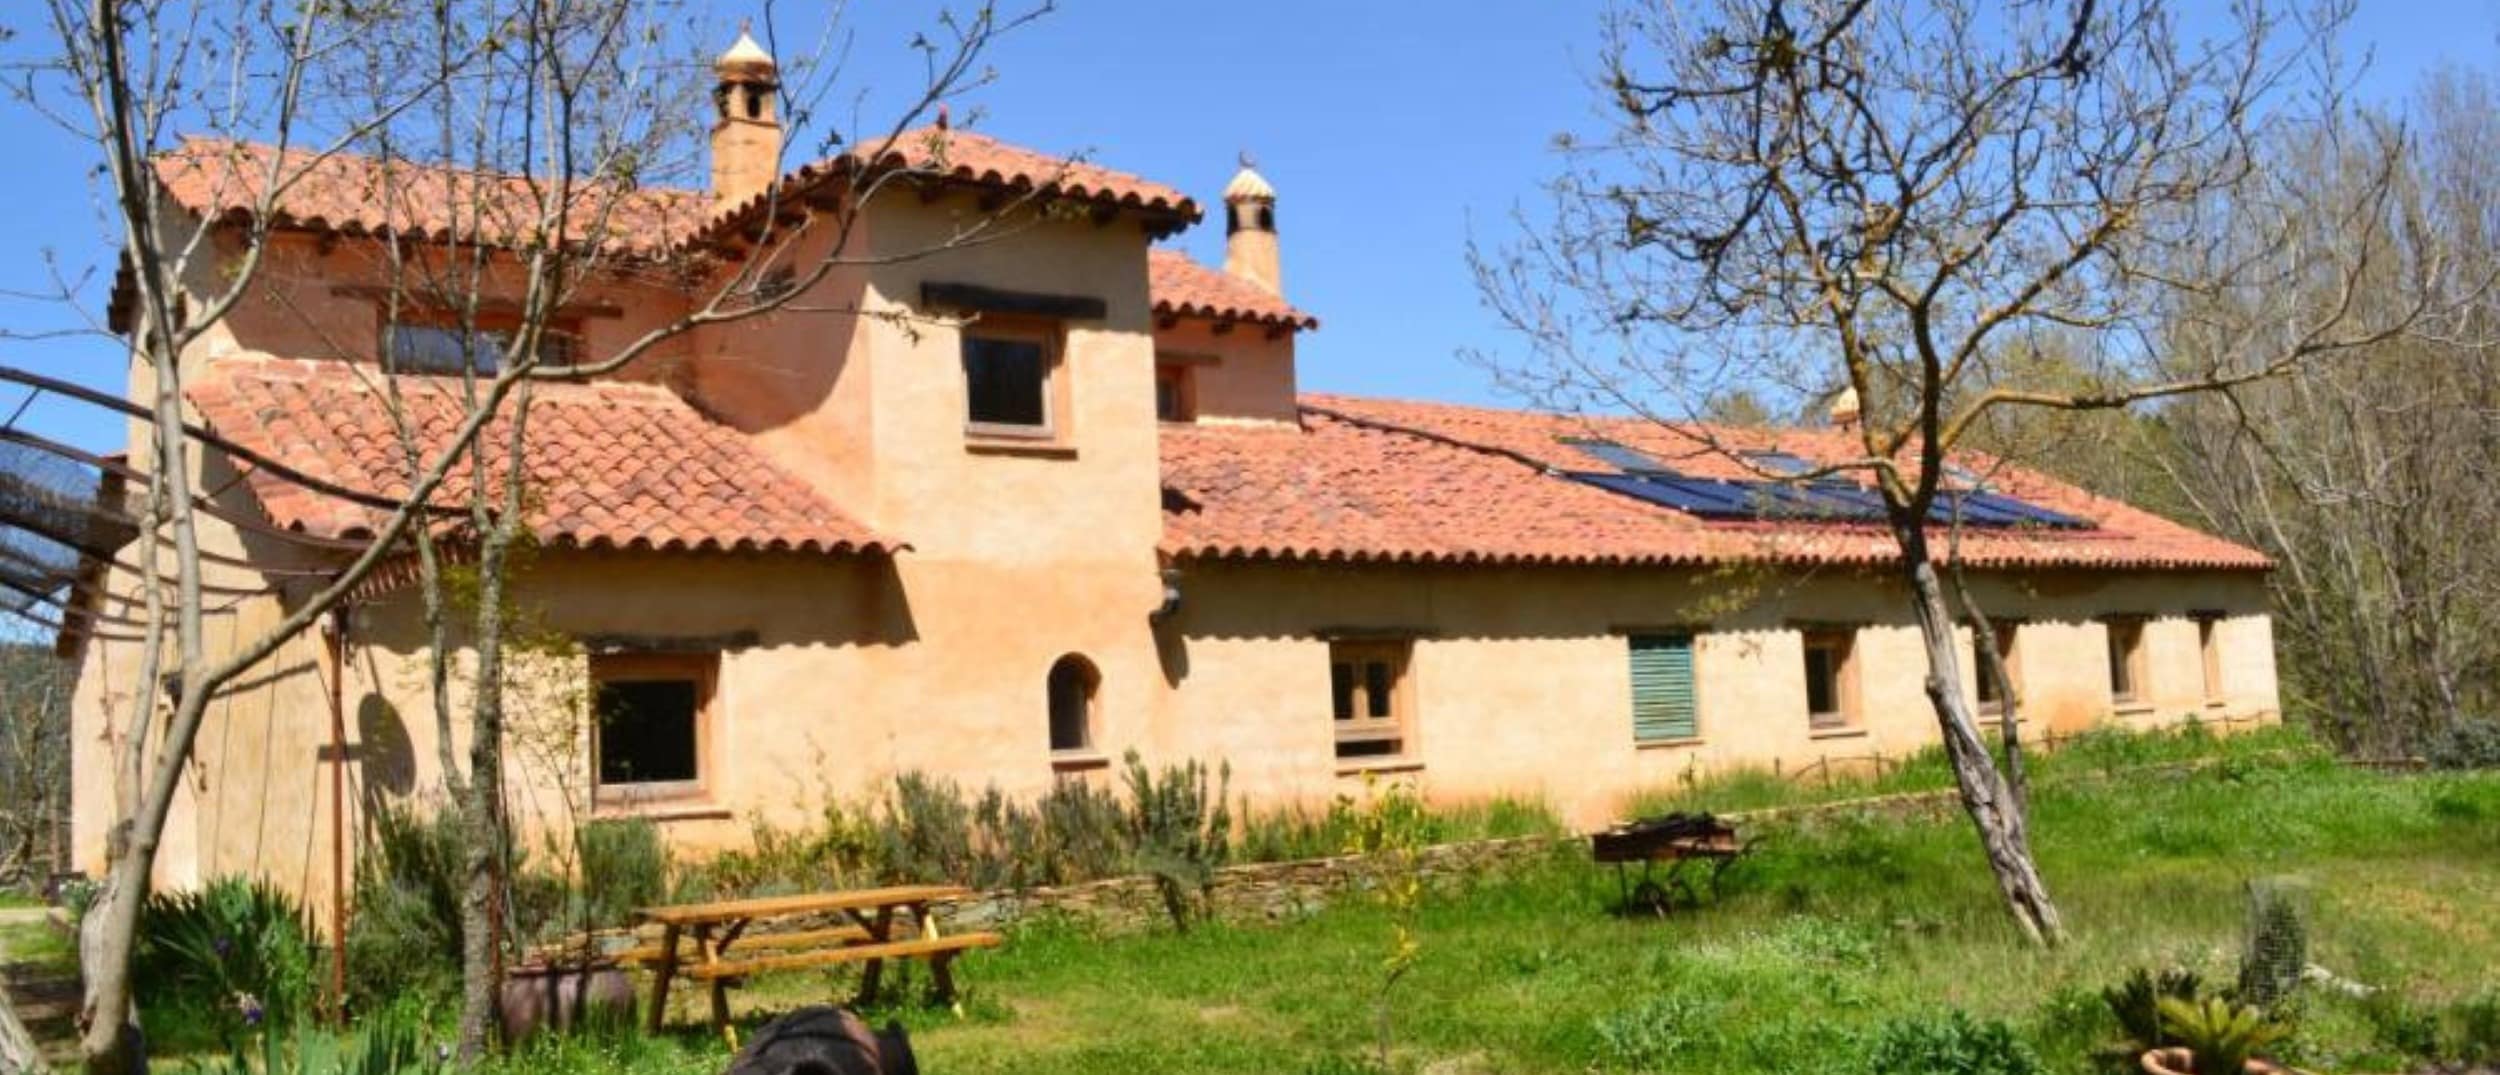 Ideas para alquilar una casa rural en la Sierra de Huelva